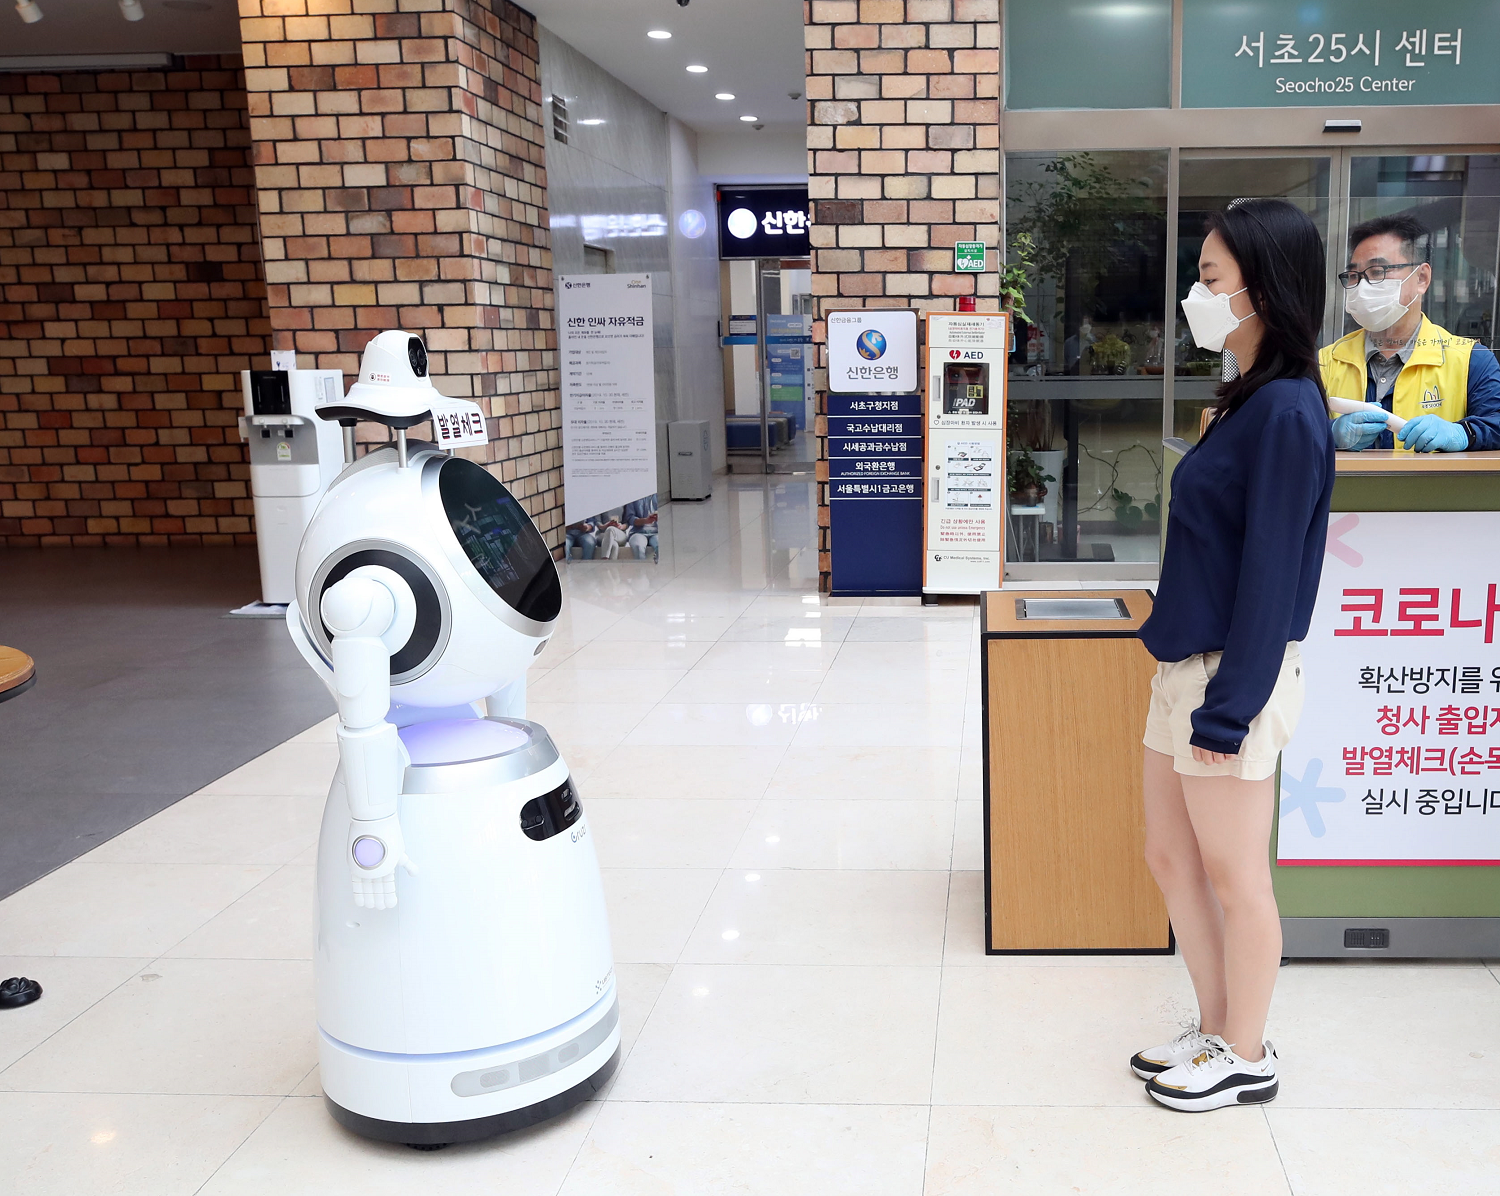 De robotinzet in Zuid-Korea is een groot voordeel in de huidige coronaperiode. Robots spelen een rol bij het bewaken van social distancing in het dagelijks leven.